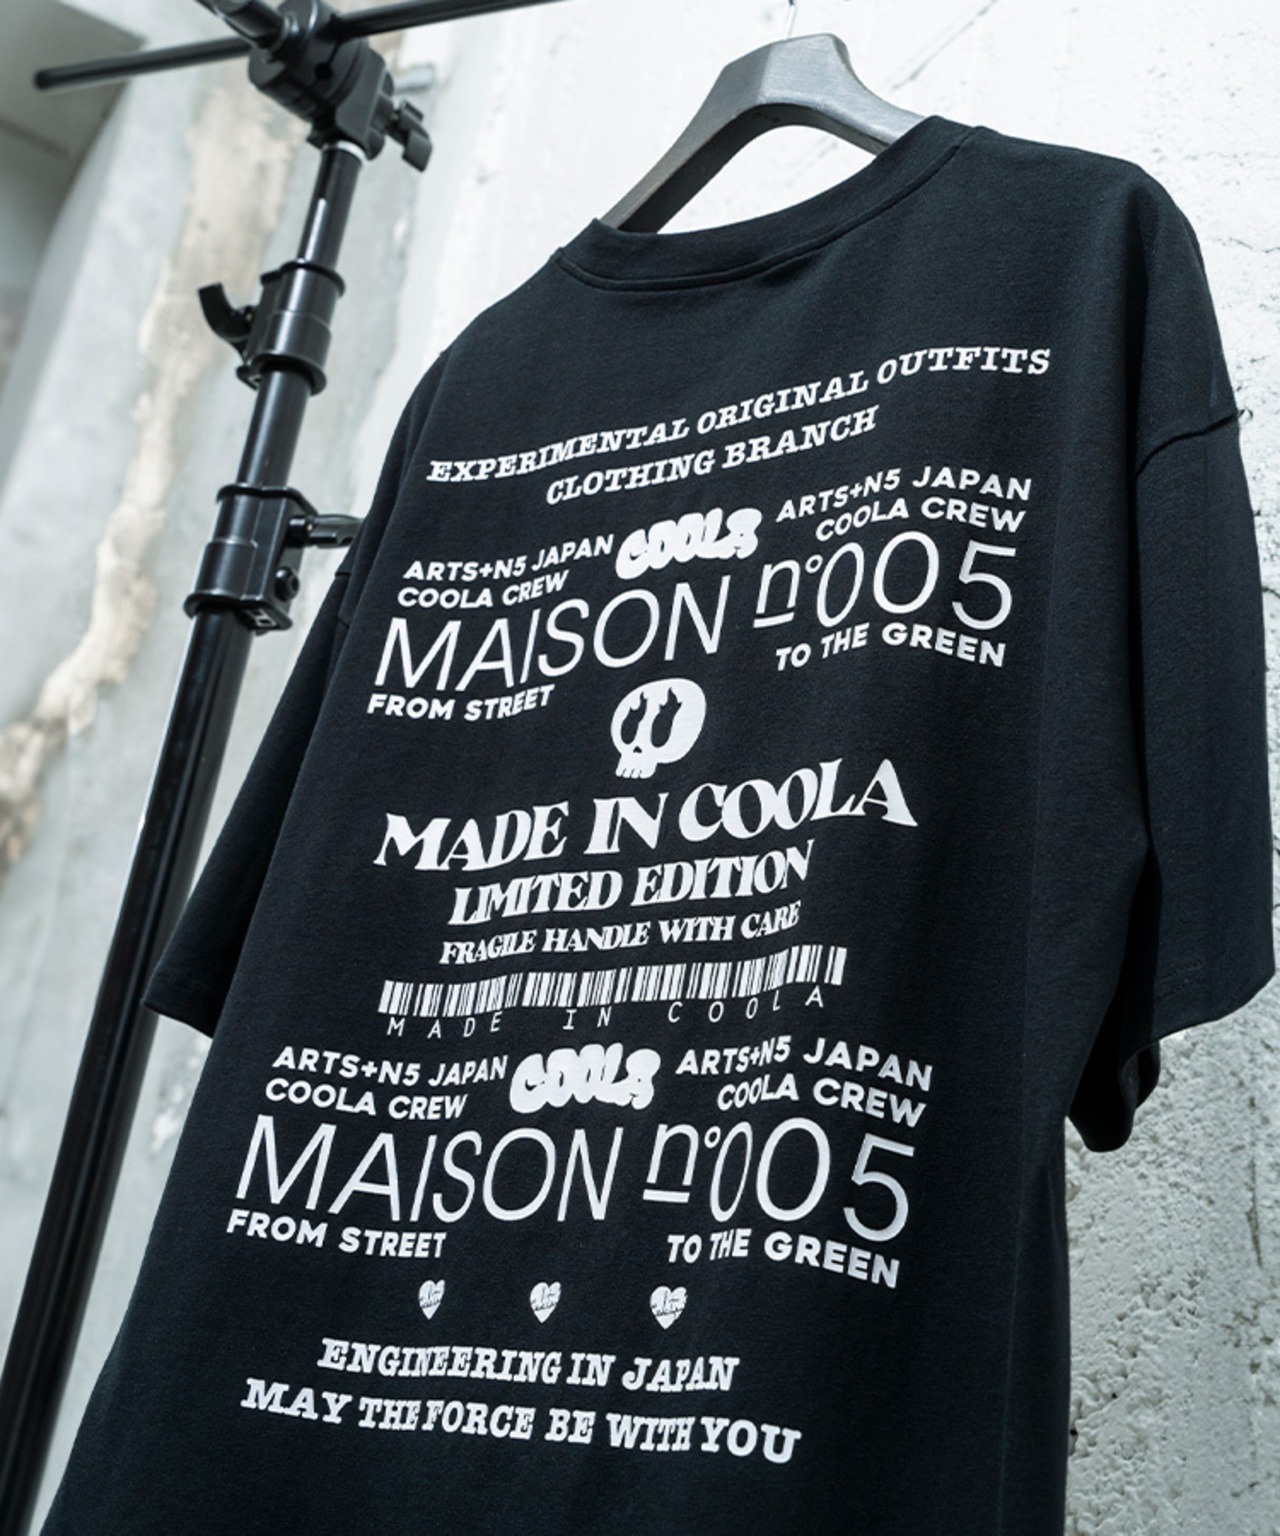 COOLA MadeロゴエンブロイダリールーズTシャツ (BLACK)　CQ-44060